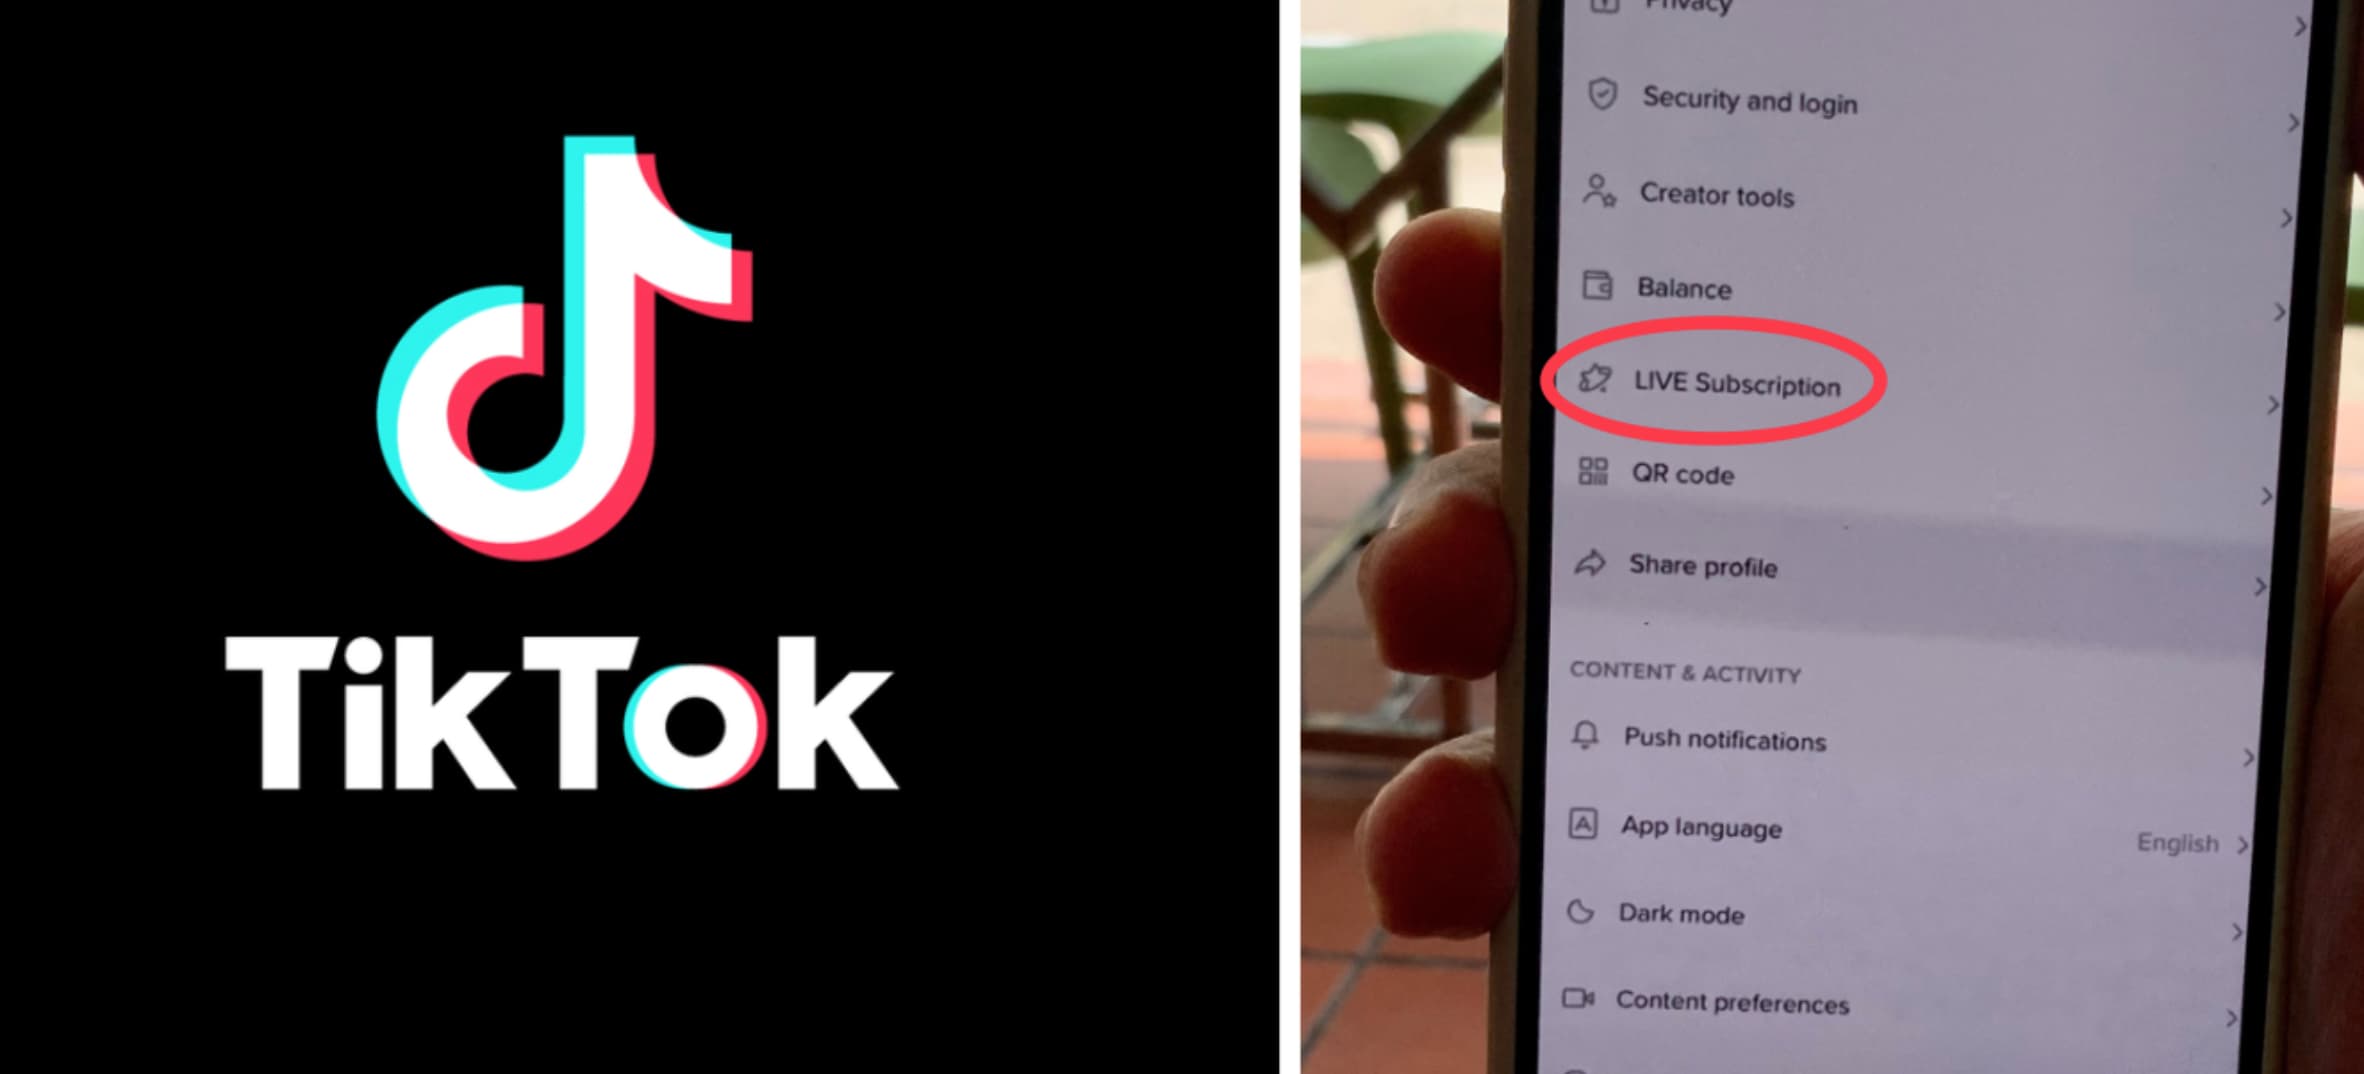 Tiktok LIVE subscription cho phép thu phí xem livestream hàng tháng?